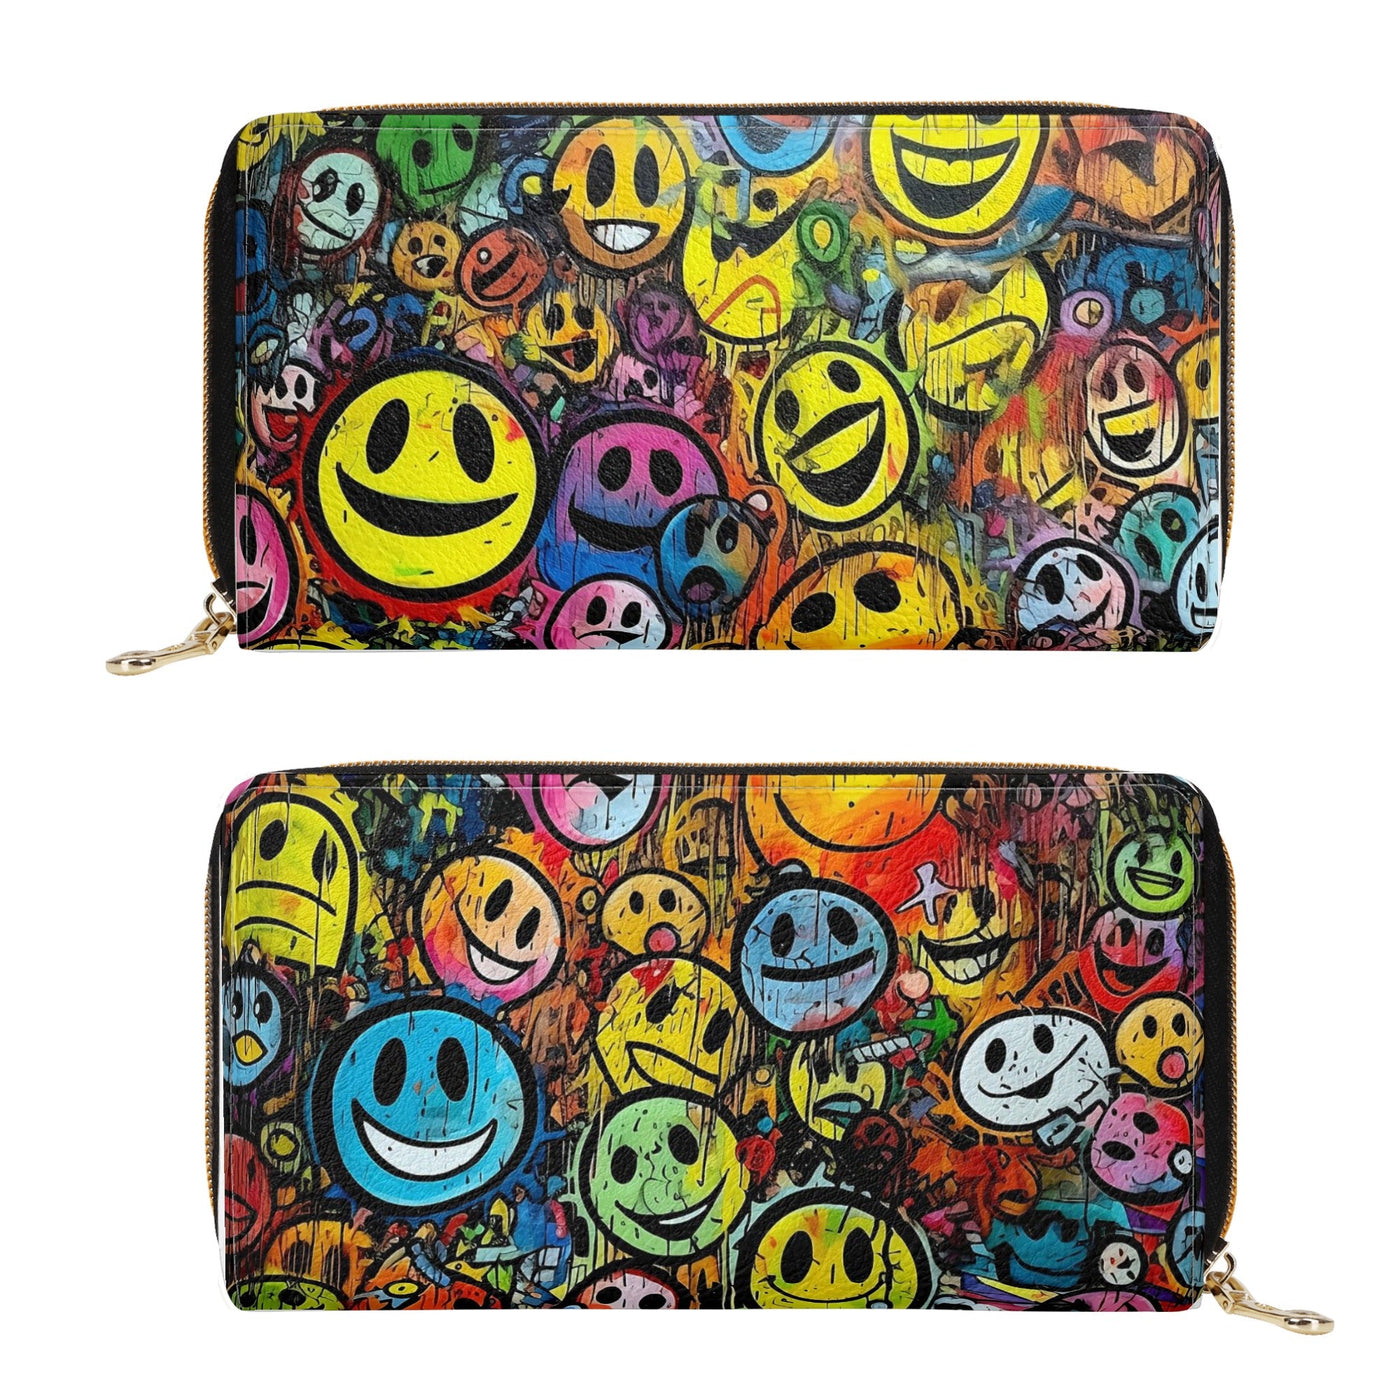 Street Art Smiley Clutch Bag - Raver Zipper Wallet